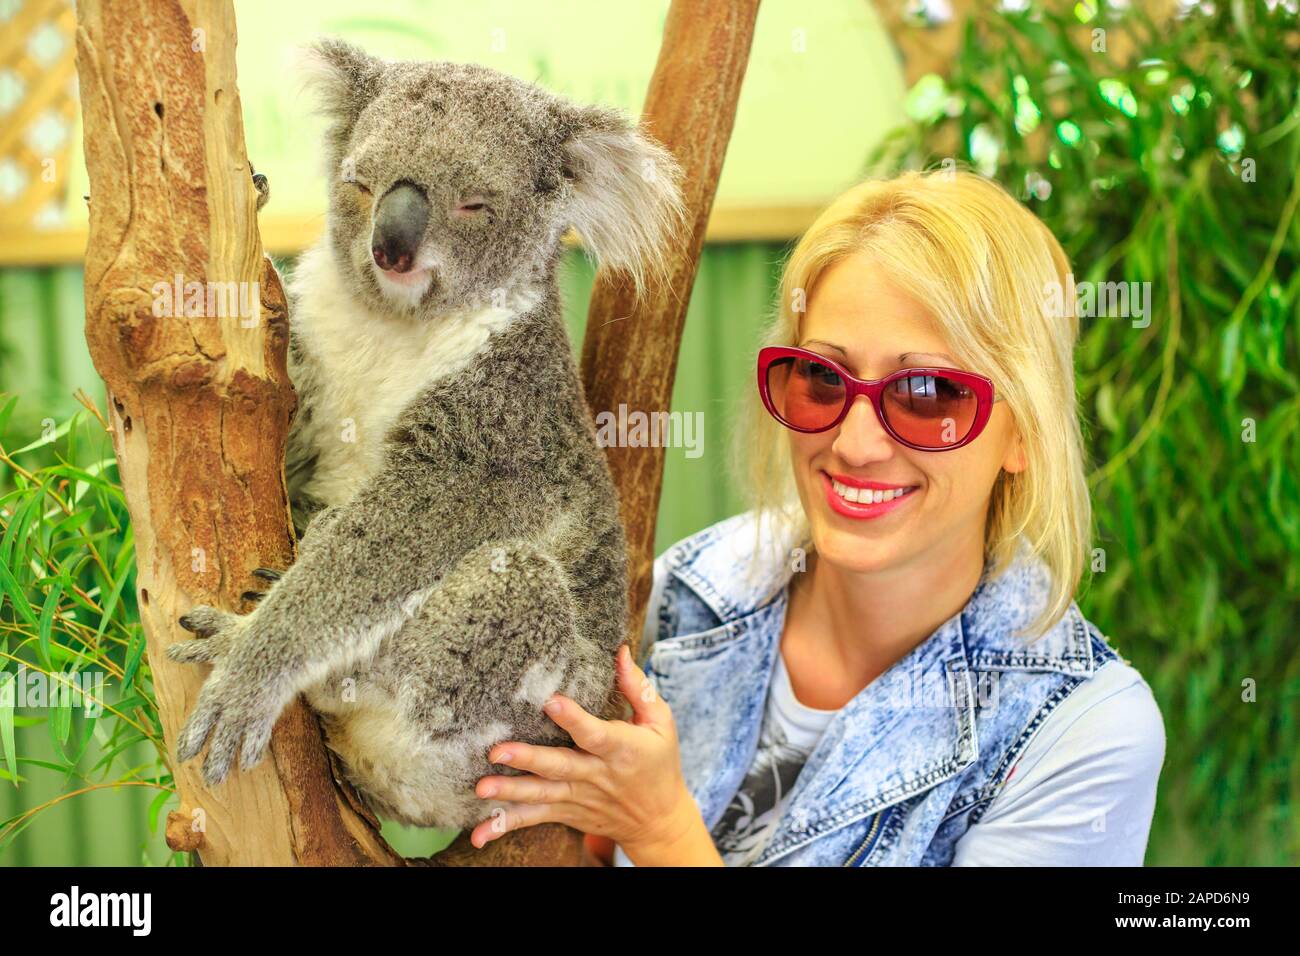 Una mujer caucásica feliz toca un oso koala, Phascolarctos cinereus, en el tronco de eucalipto en Victoria. Encuentro con el animal marsupial australiano Foto de stock